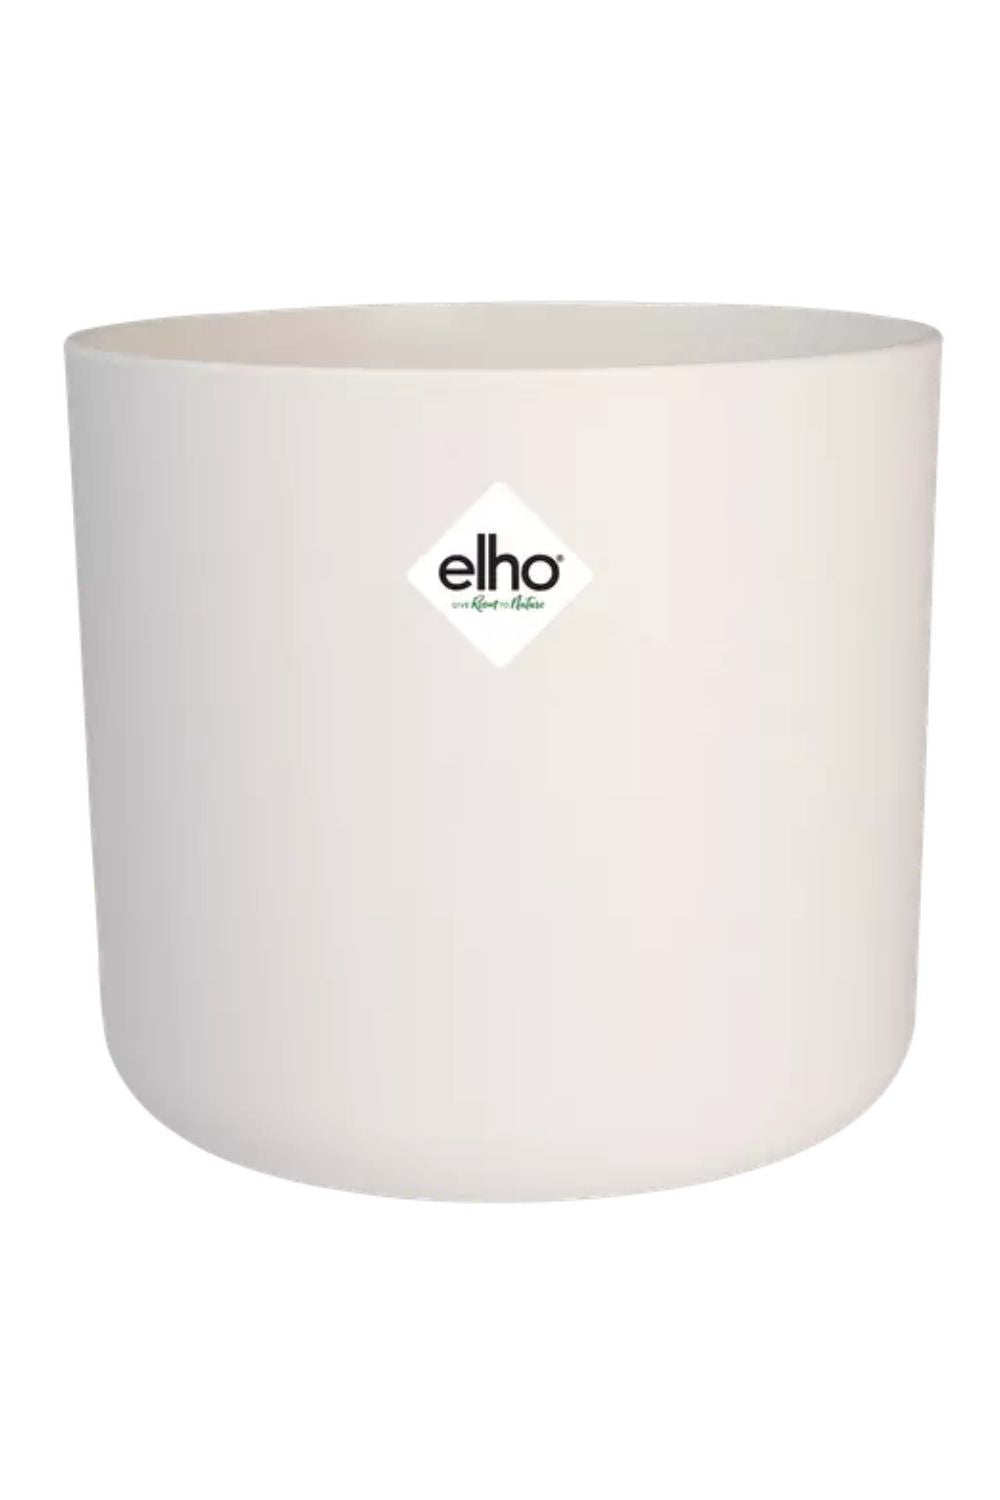 Blumentopf Elho B. for soft rund Silky White 16cm